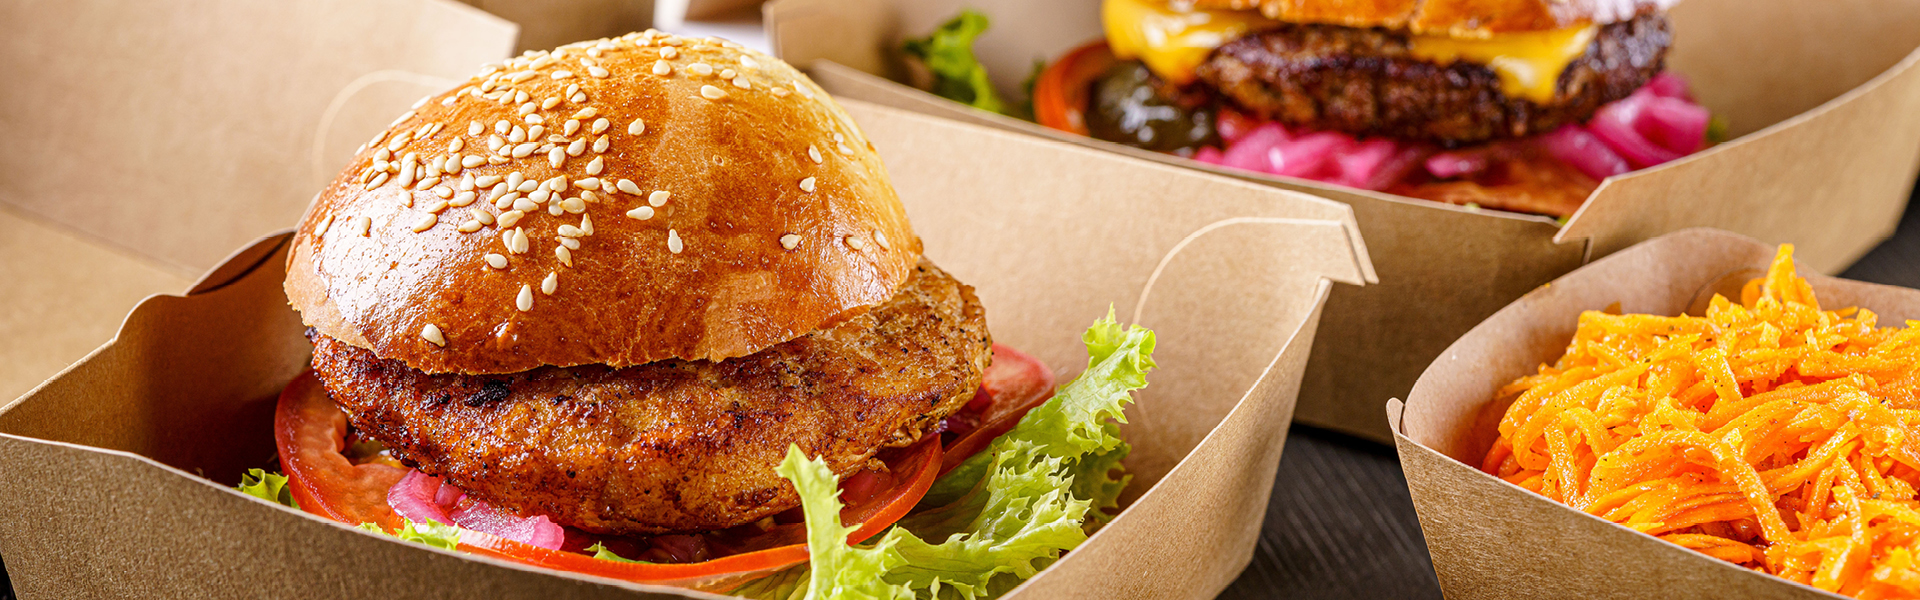 Klappschalen/Burgerboxen aus Kraft-Karton mit Hamburger 